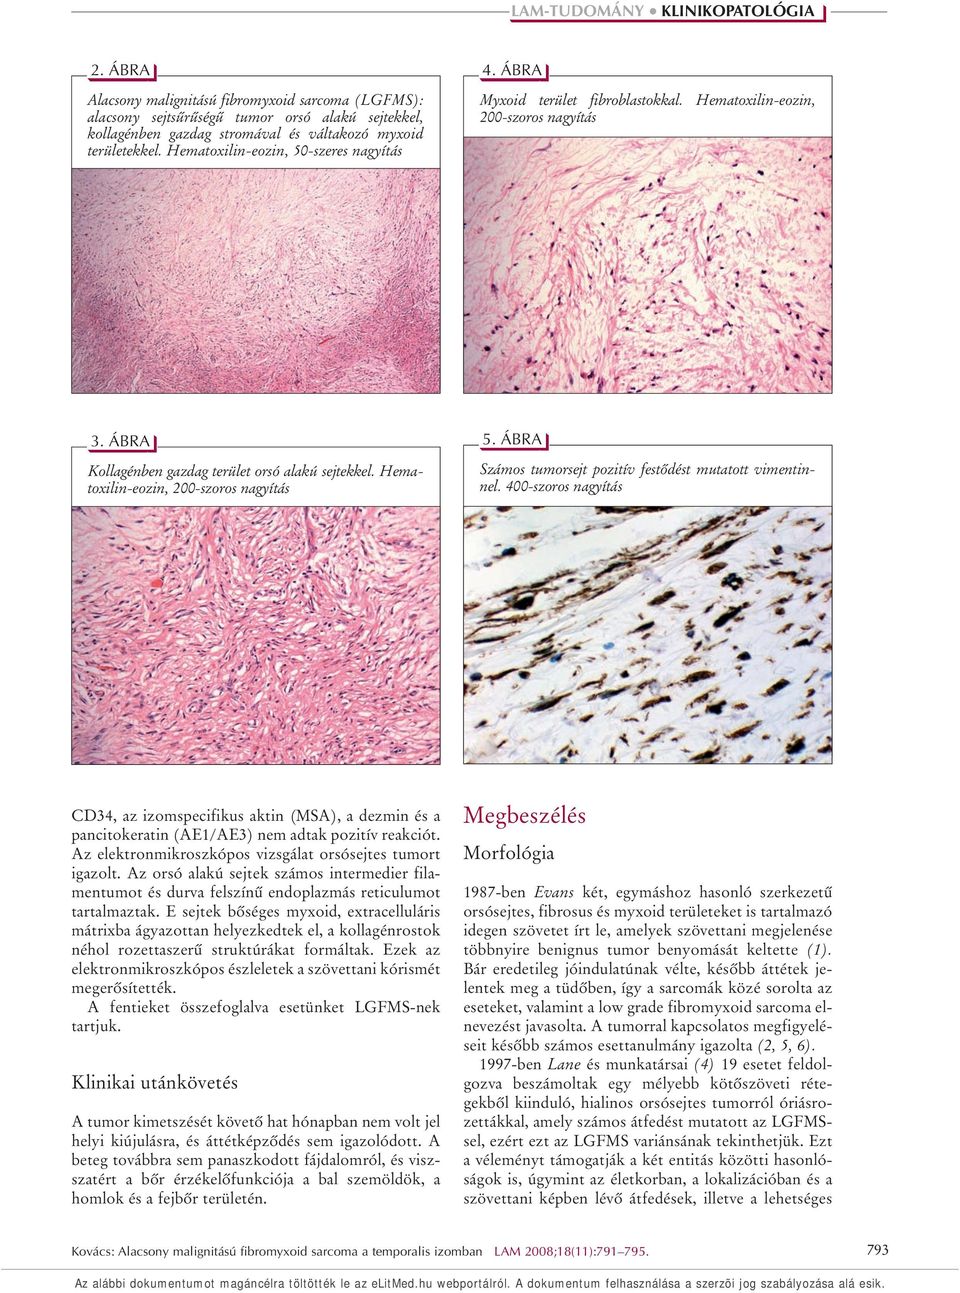 Alacsony malignitású fibromyxoid sarcoma a temporalis izomban - PDF  Ingyenes letöltés